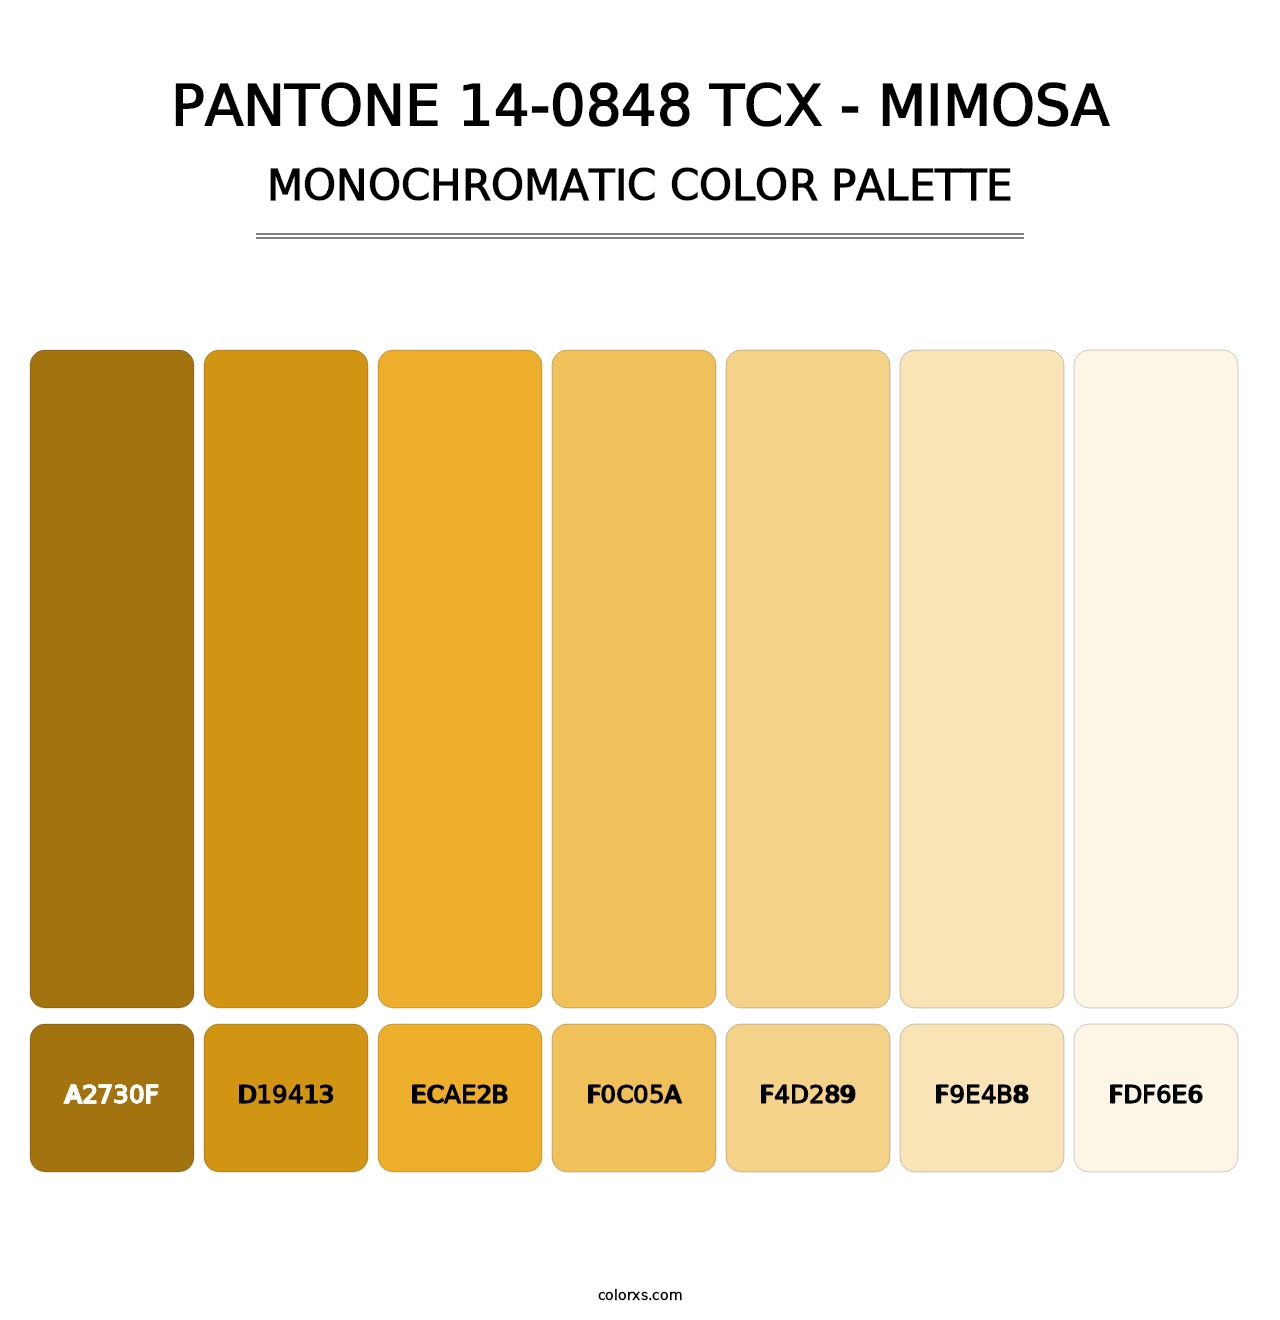 PANTONE 14-0848 TCX - Mimosa - Monochromatic Color Palette